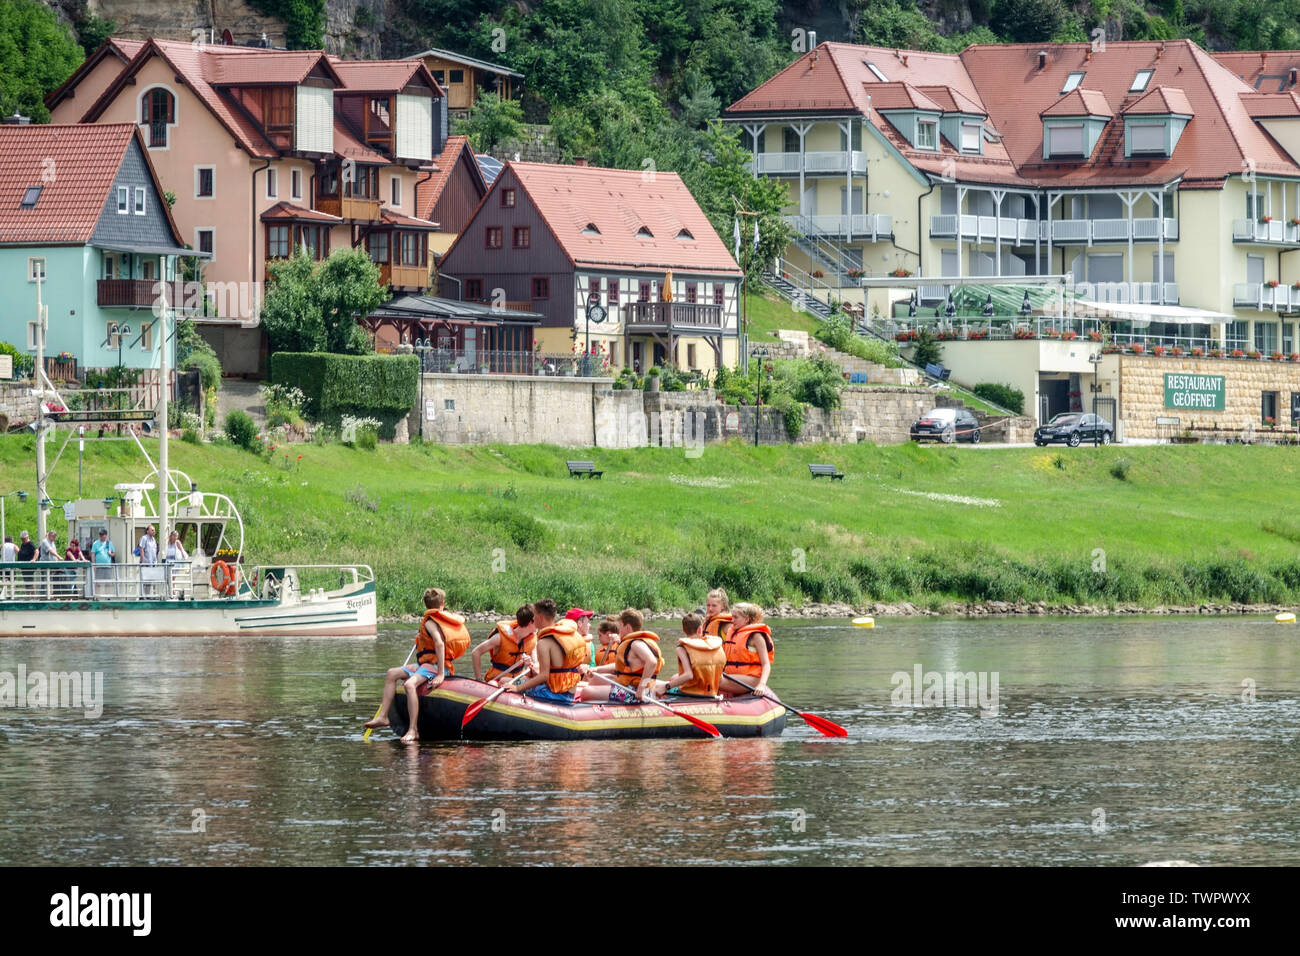 Urlaub am Fluss, Kurort Rathen, Sächsische Schweiz, Sachsen, Deutschland Urlaub Stockfoto